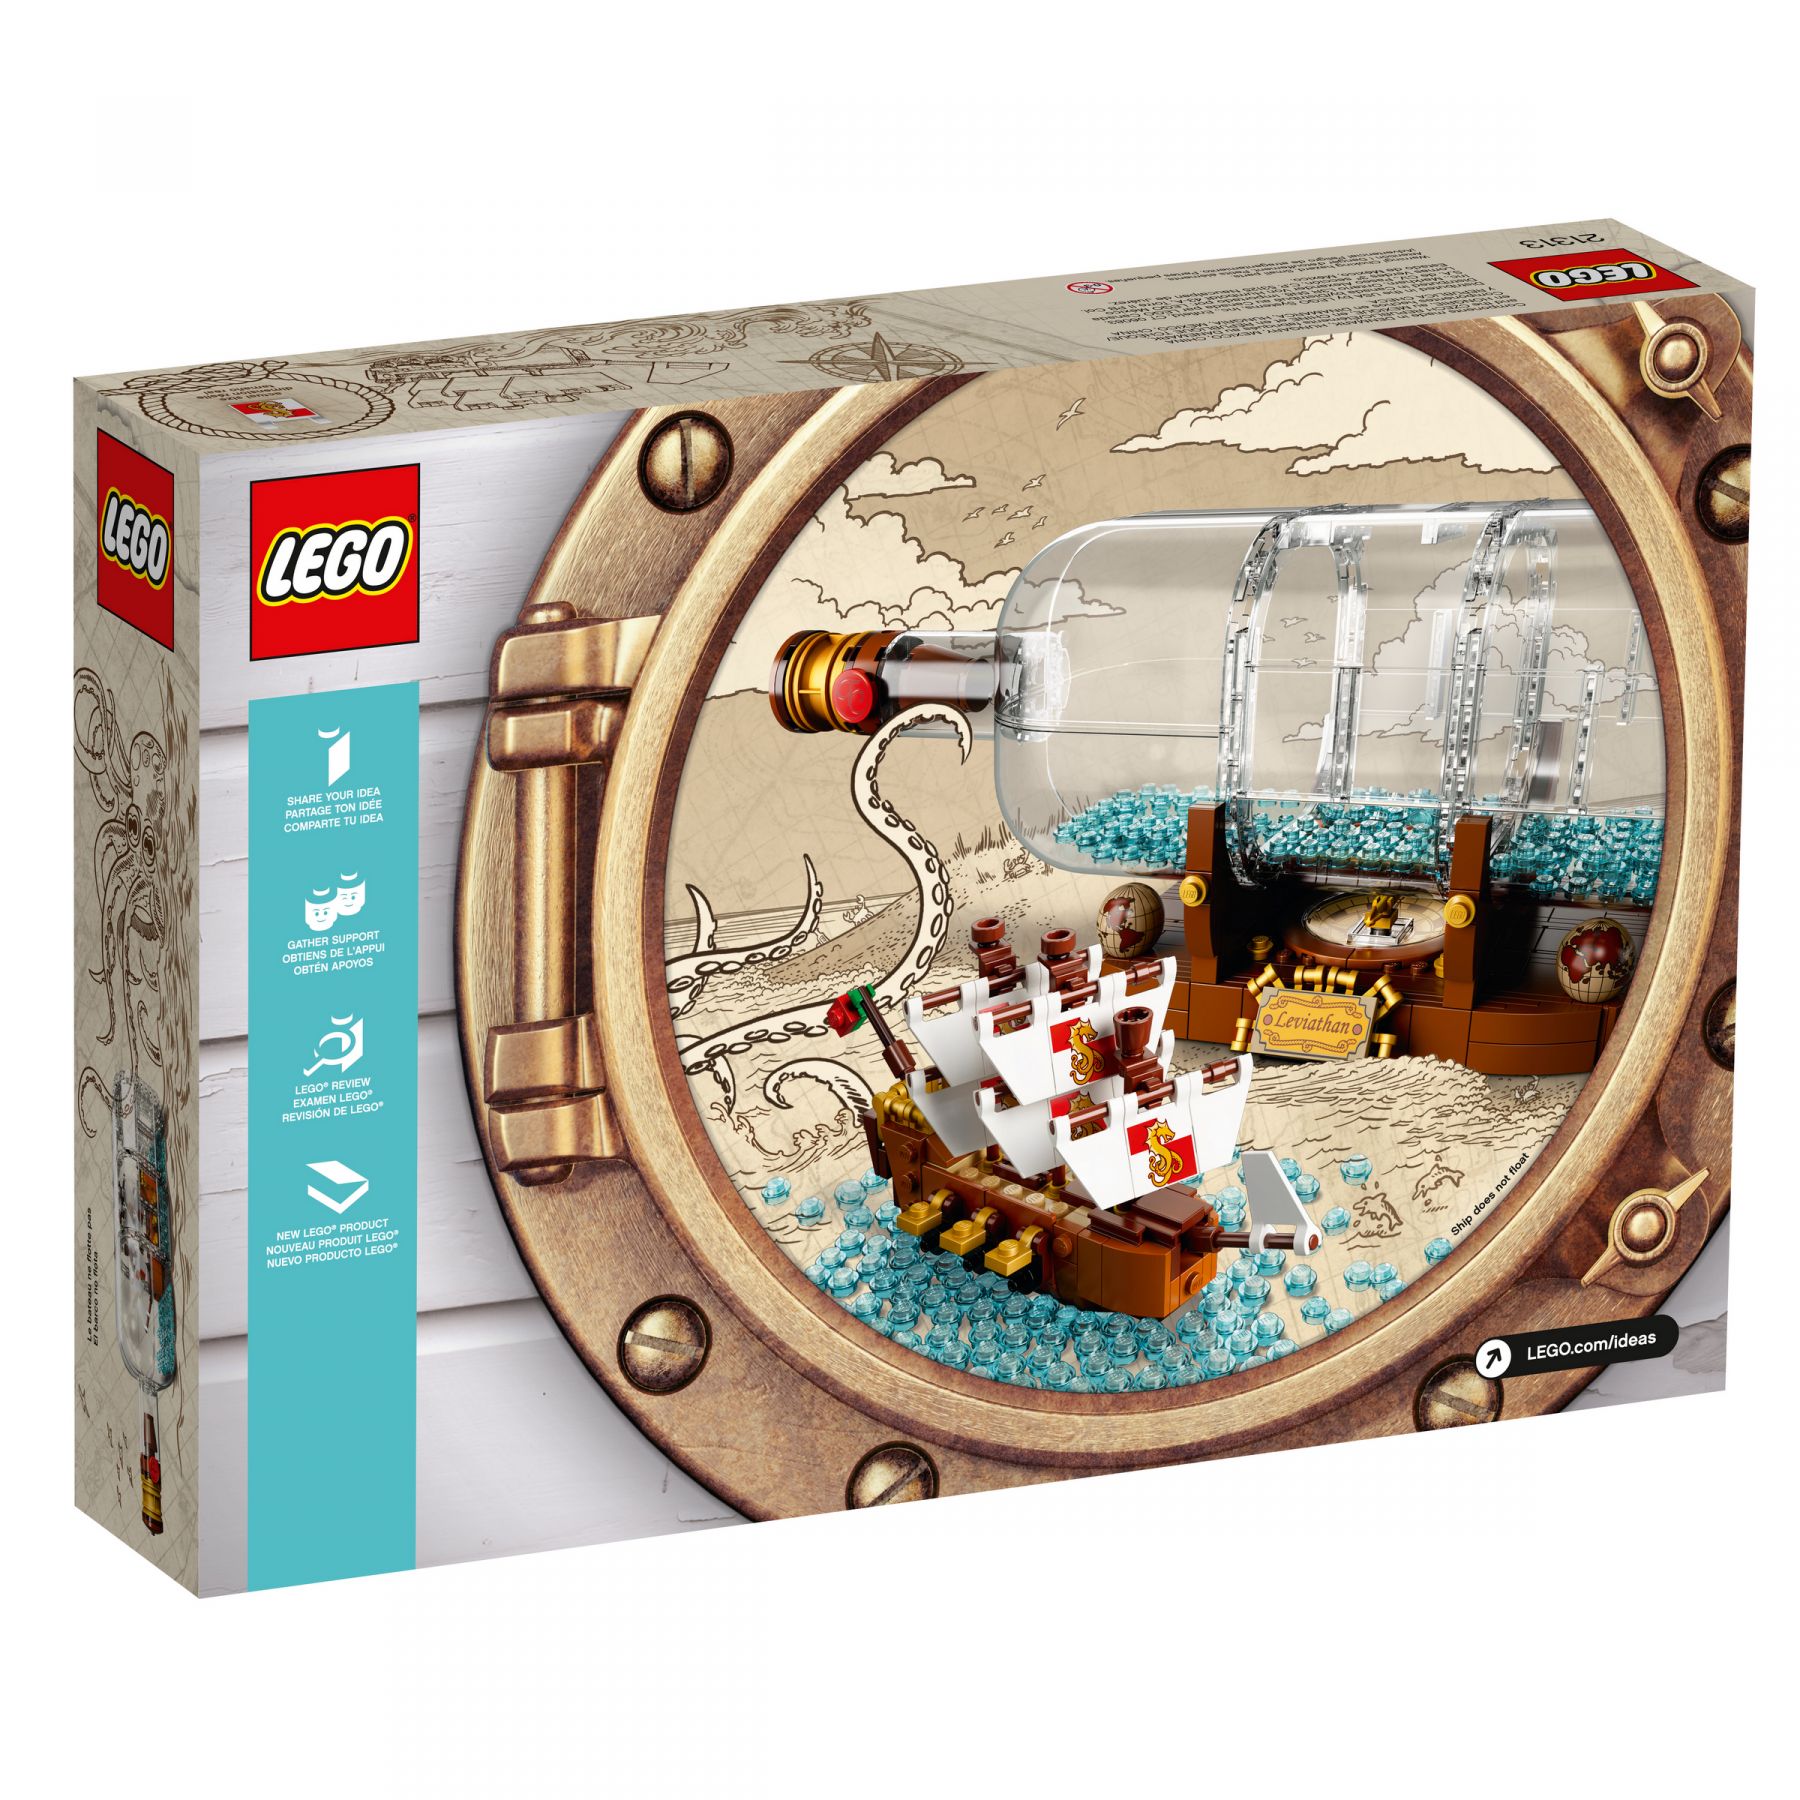 LEGO Ideas 21313 Schiff in der Flasche LEGO_21313_alt5.jpg